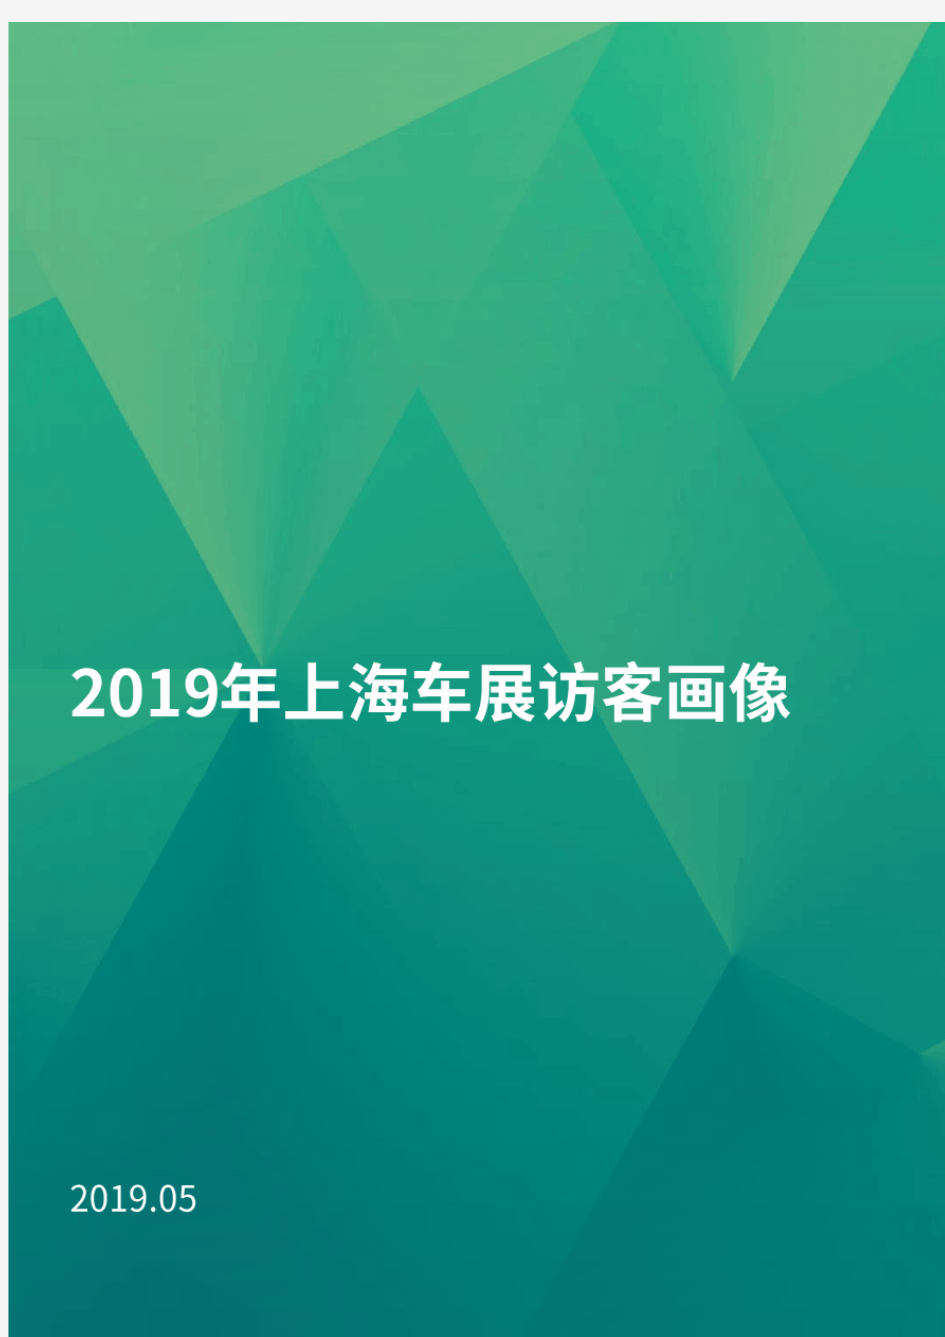 2019-2020年上海车展访客研究报告